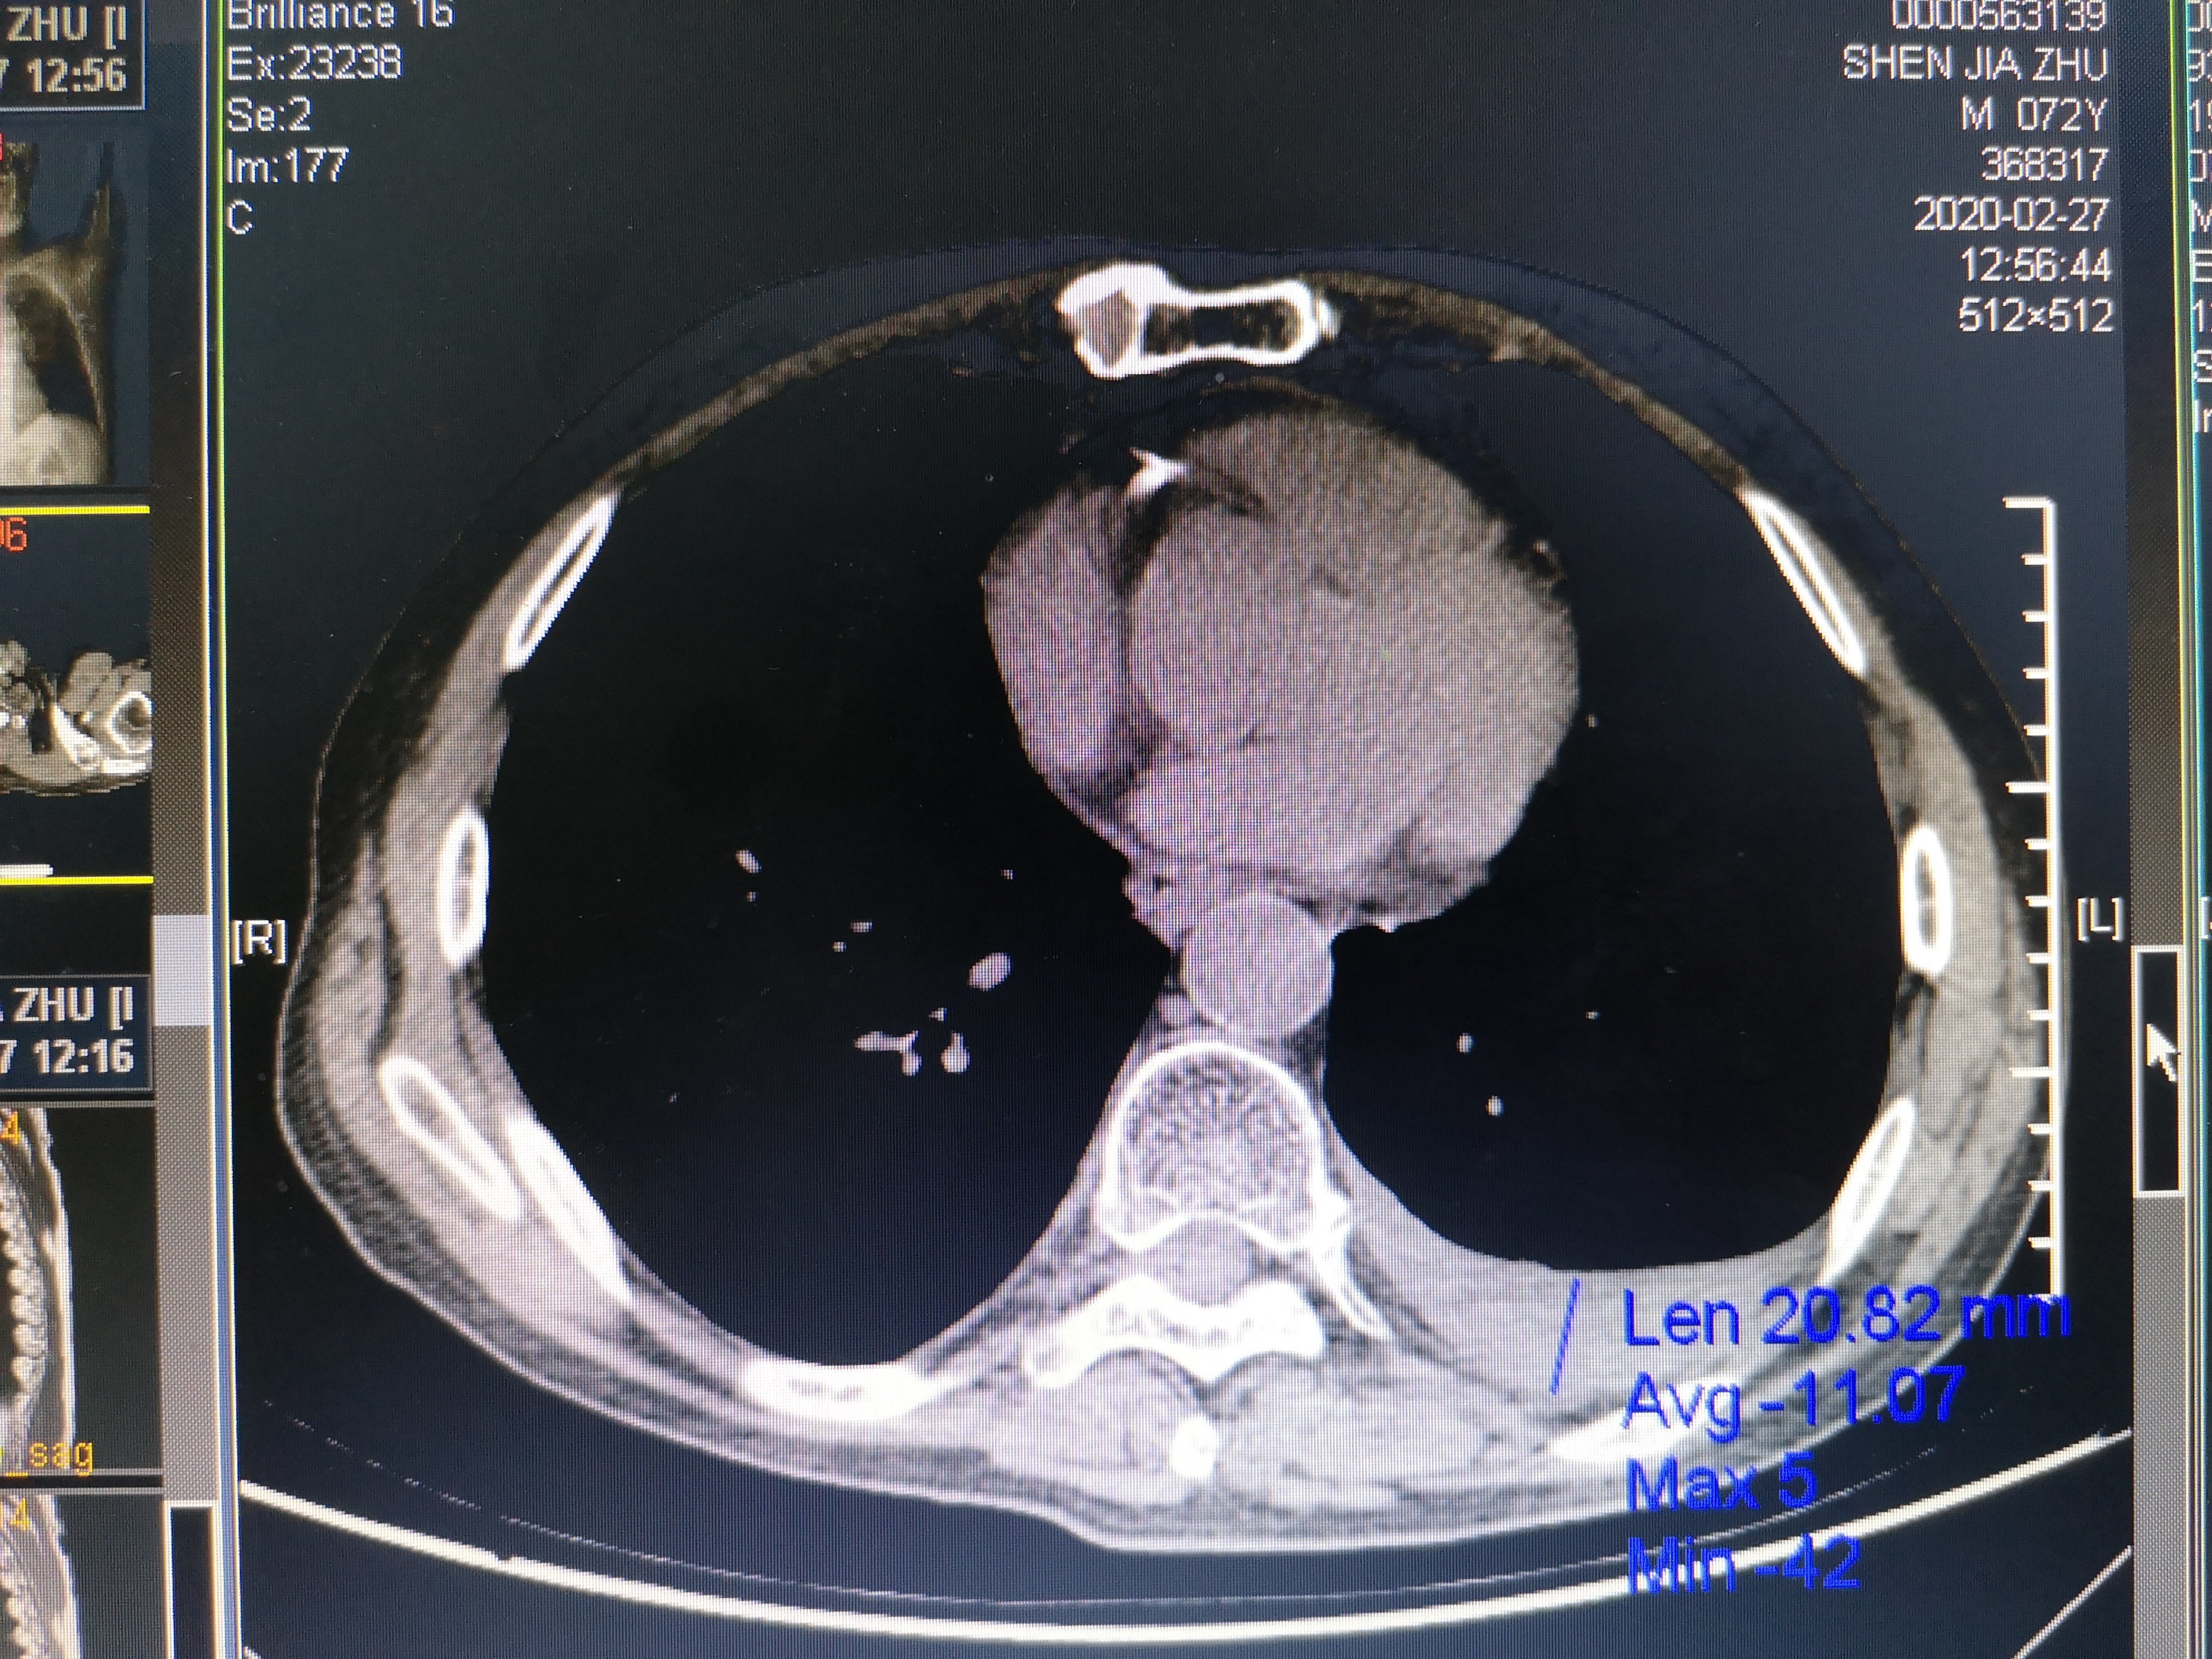 从上面这张ct图我们可以看出这个患者左侧有胸腔积液,就是我上面标注